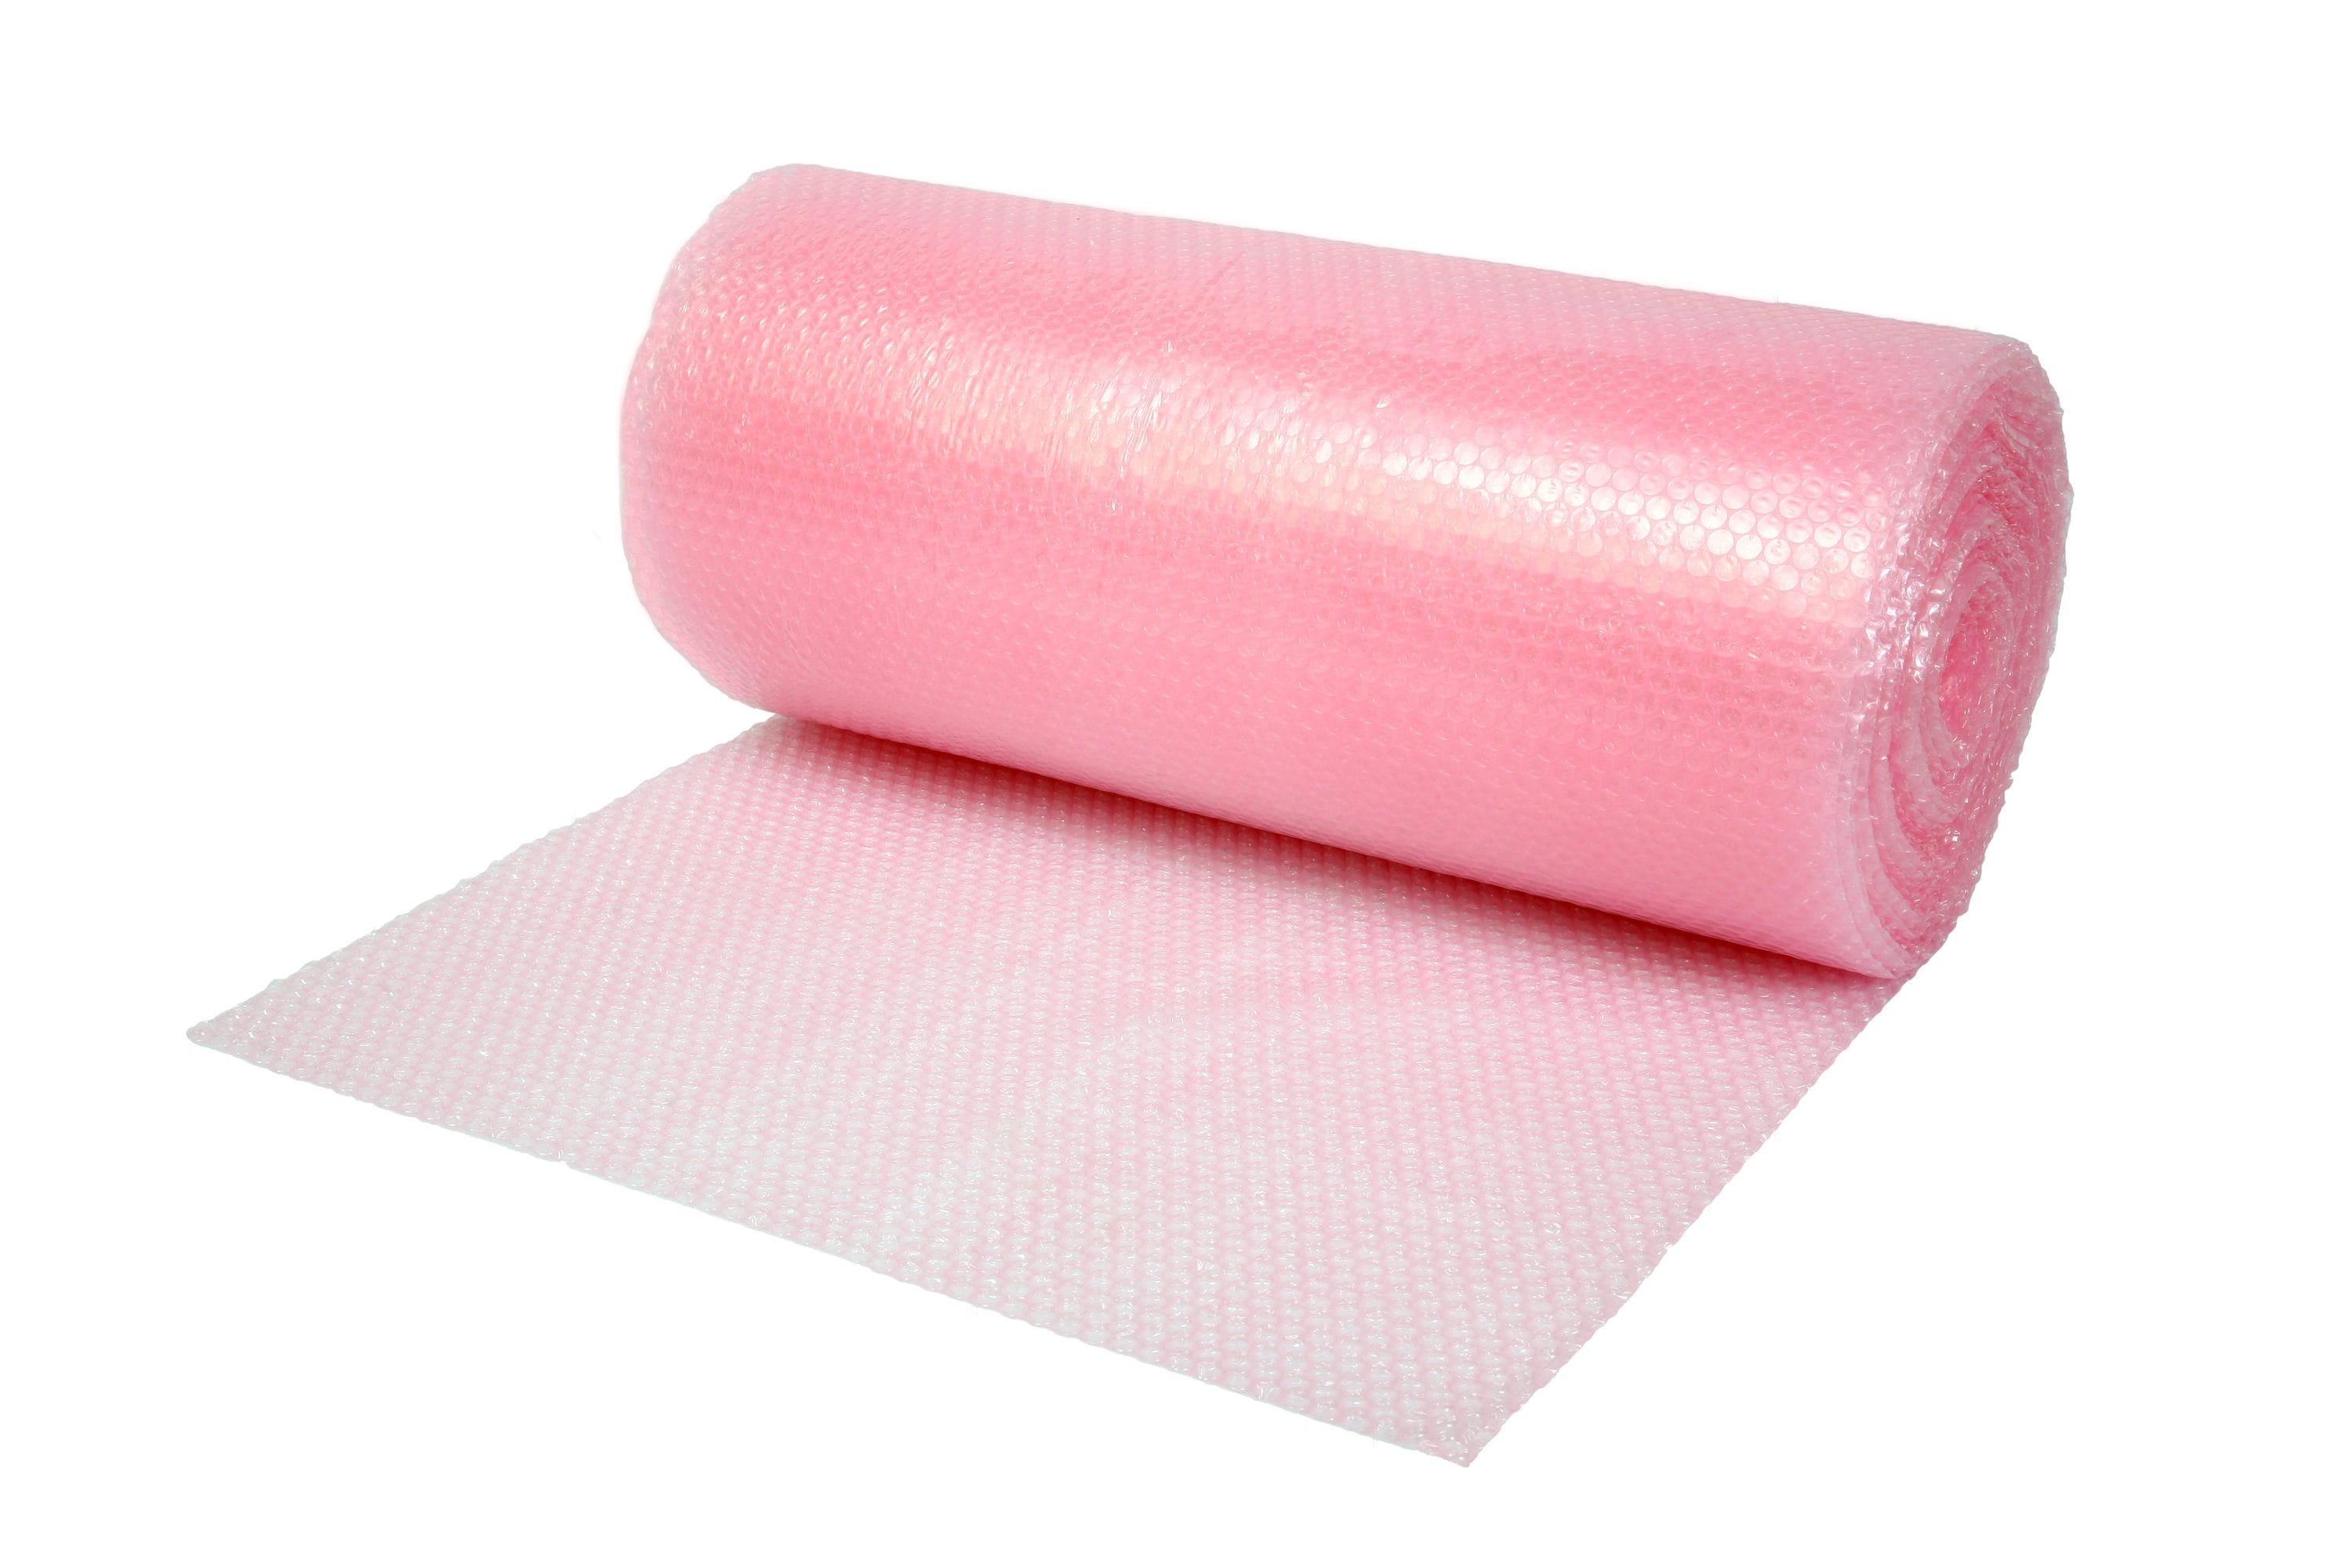 supplyhut 3/16” Anti-Static Small Bubble Cushioning Wrap Padding Roll 50′ x  12” Wide 50FT, Pink 0-5867-3797-9 - Office Optima